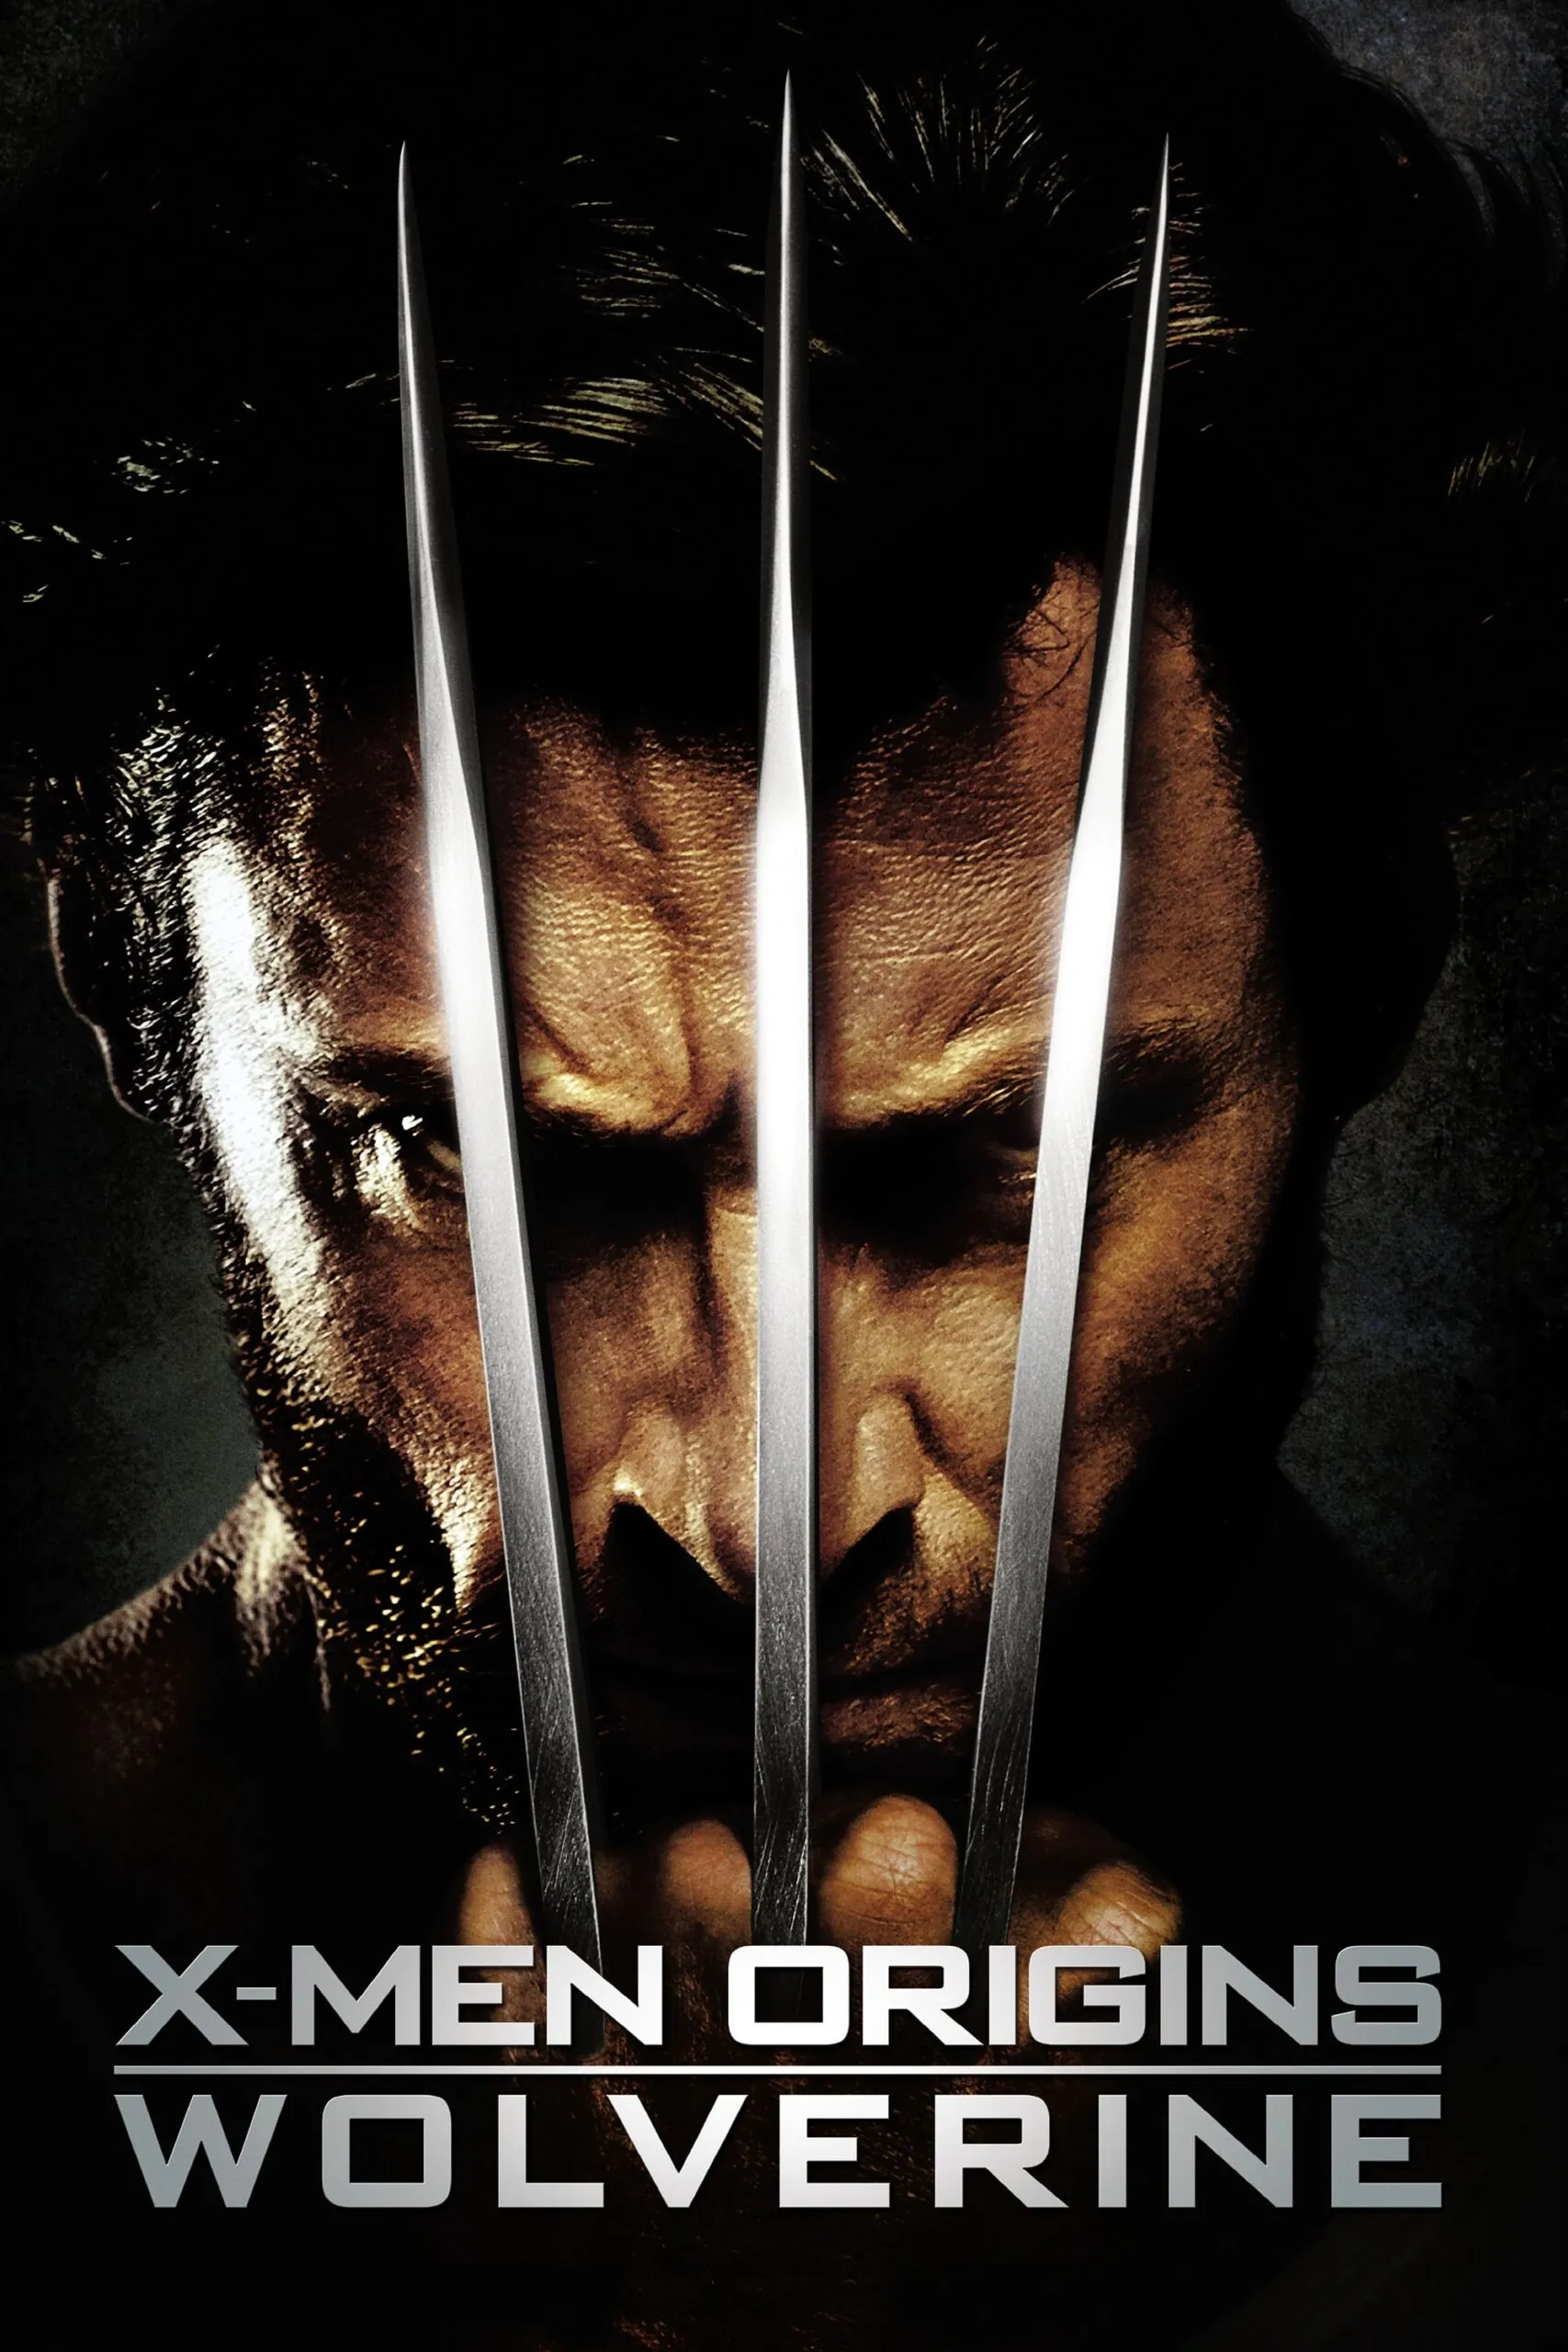 X-Men Origins Wolverine